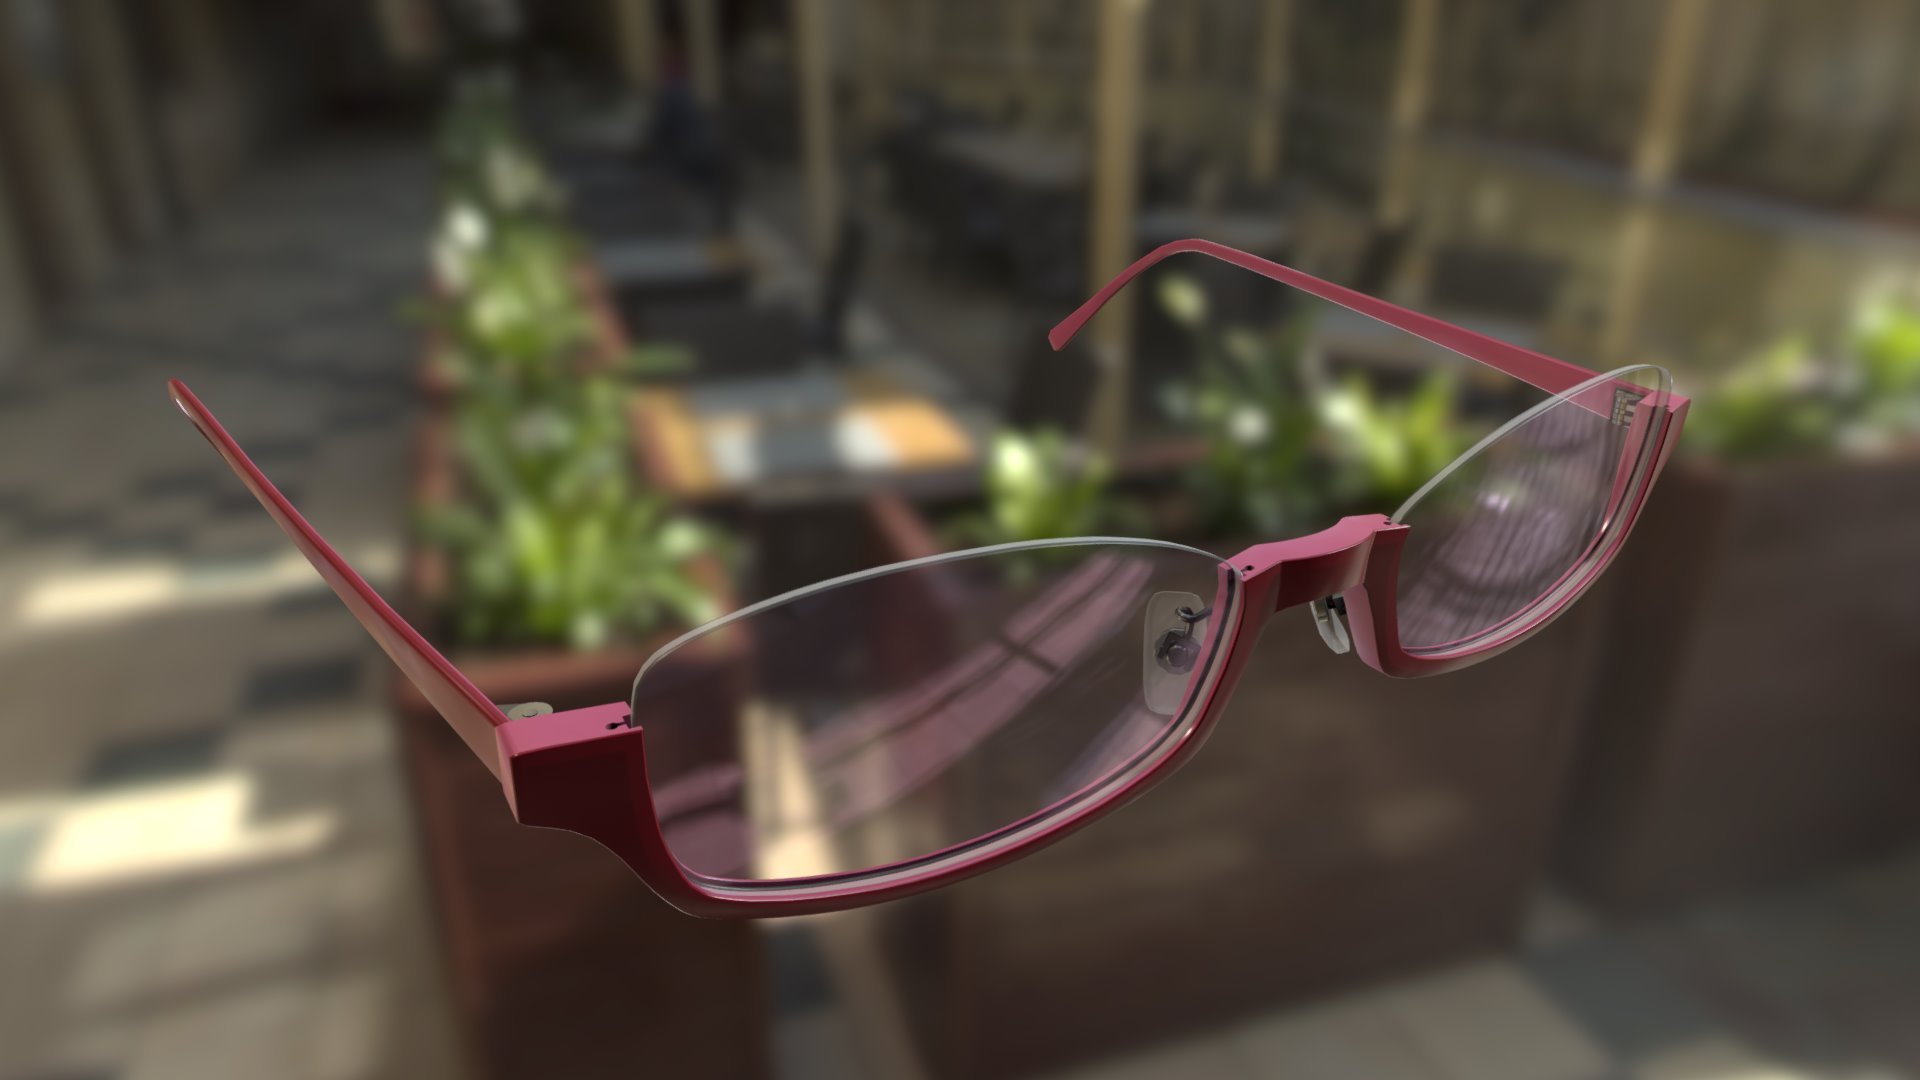 This model was made for VirTry.net - Under rim glasses - 3D model by ruslan_kokarev 3d model